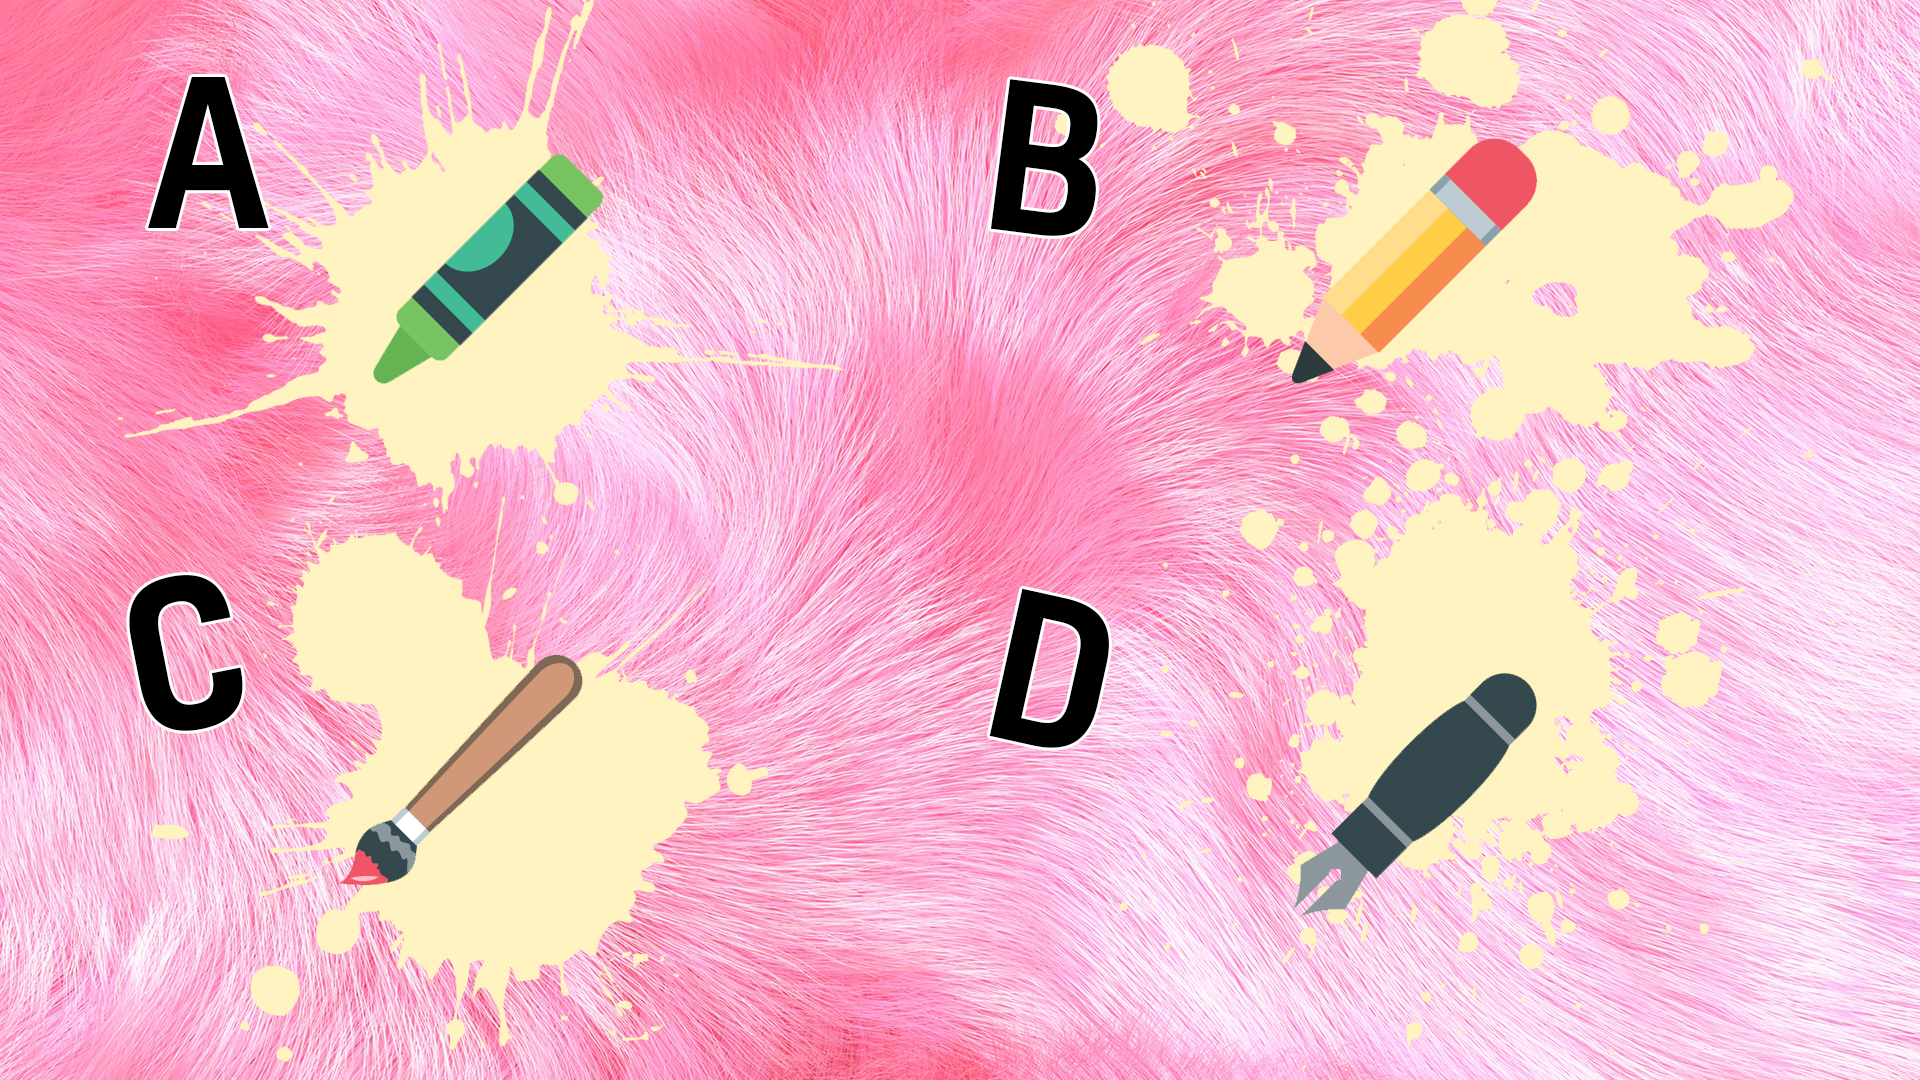 A selection of emojis: a crayon, a pencil, a paintbrush, a pen